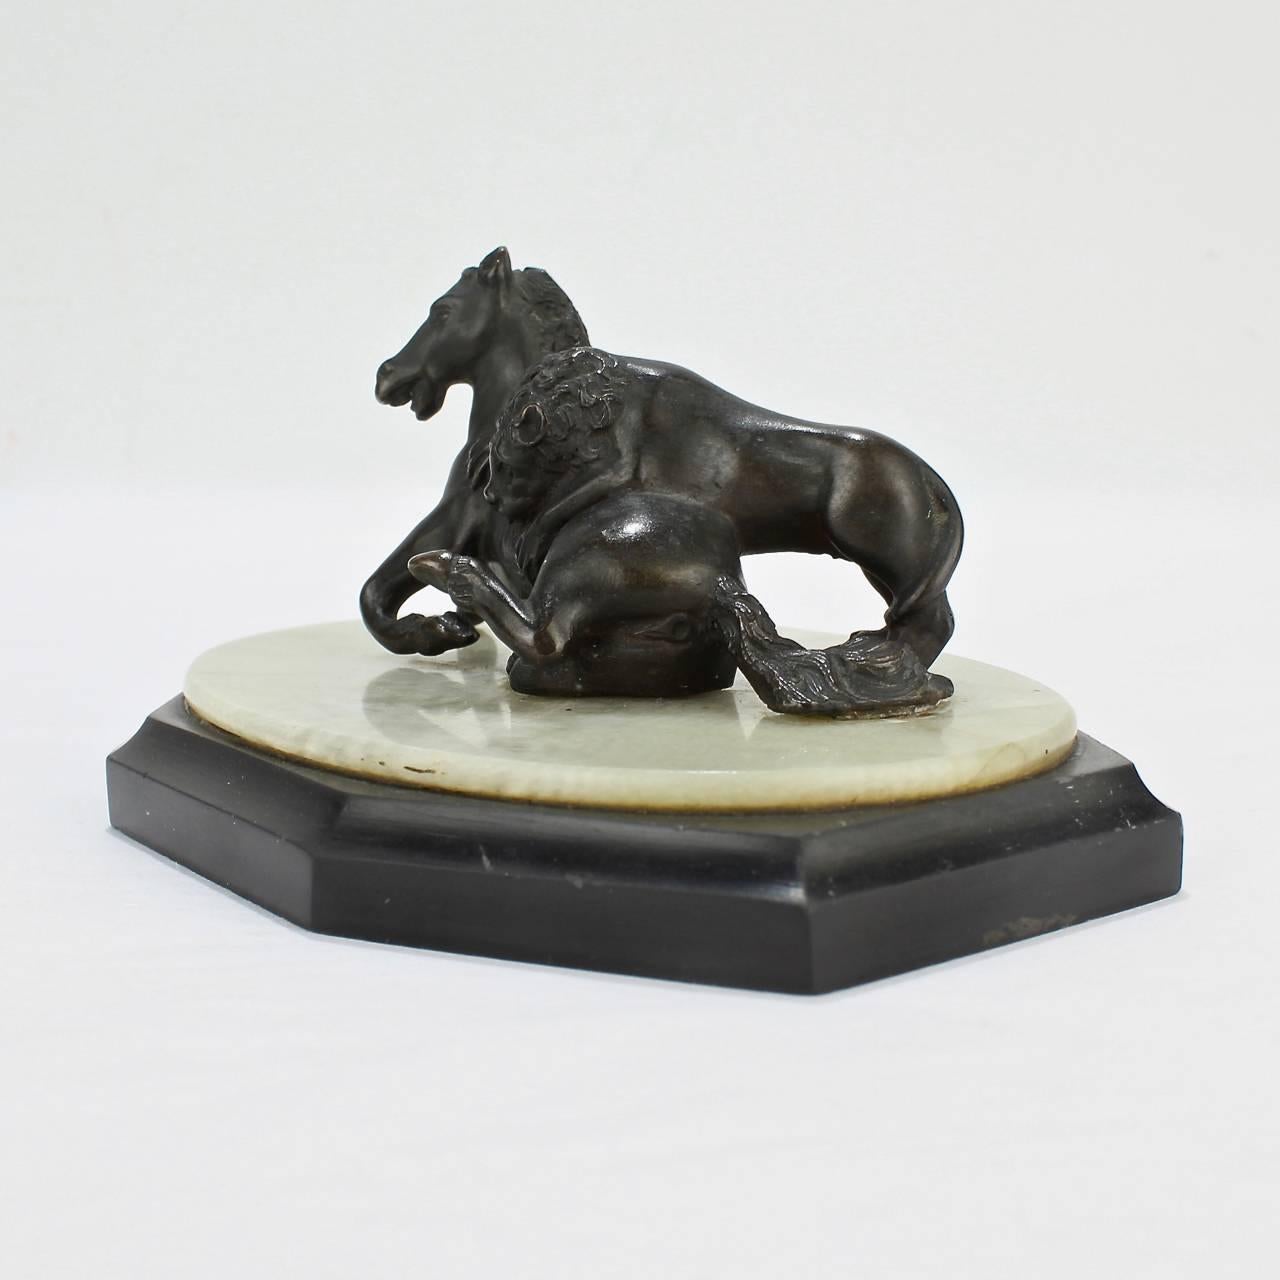 Un beau modèle miniature Grand Tour du 19ème siècle de la sculpture du Lion attaquant un cheval.

Inspiré de l'ancienne version romaine trouvée sur la colline du Capitole.

De la taille d'un presse-papiers pour le bureau ou parfait pour une